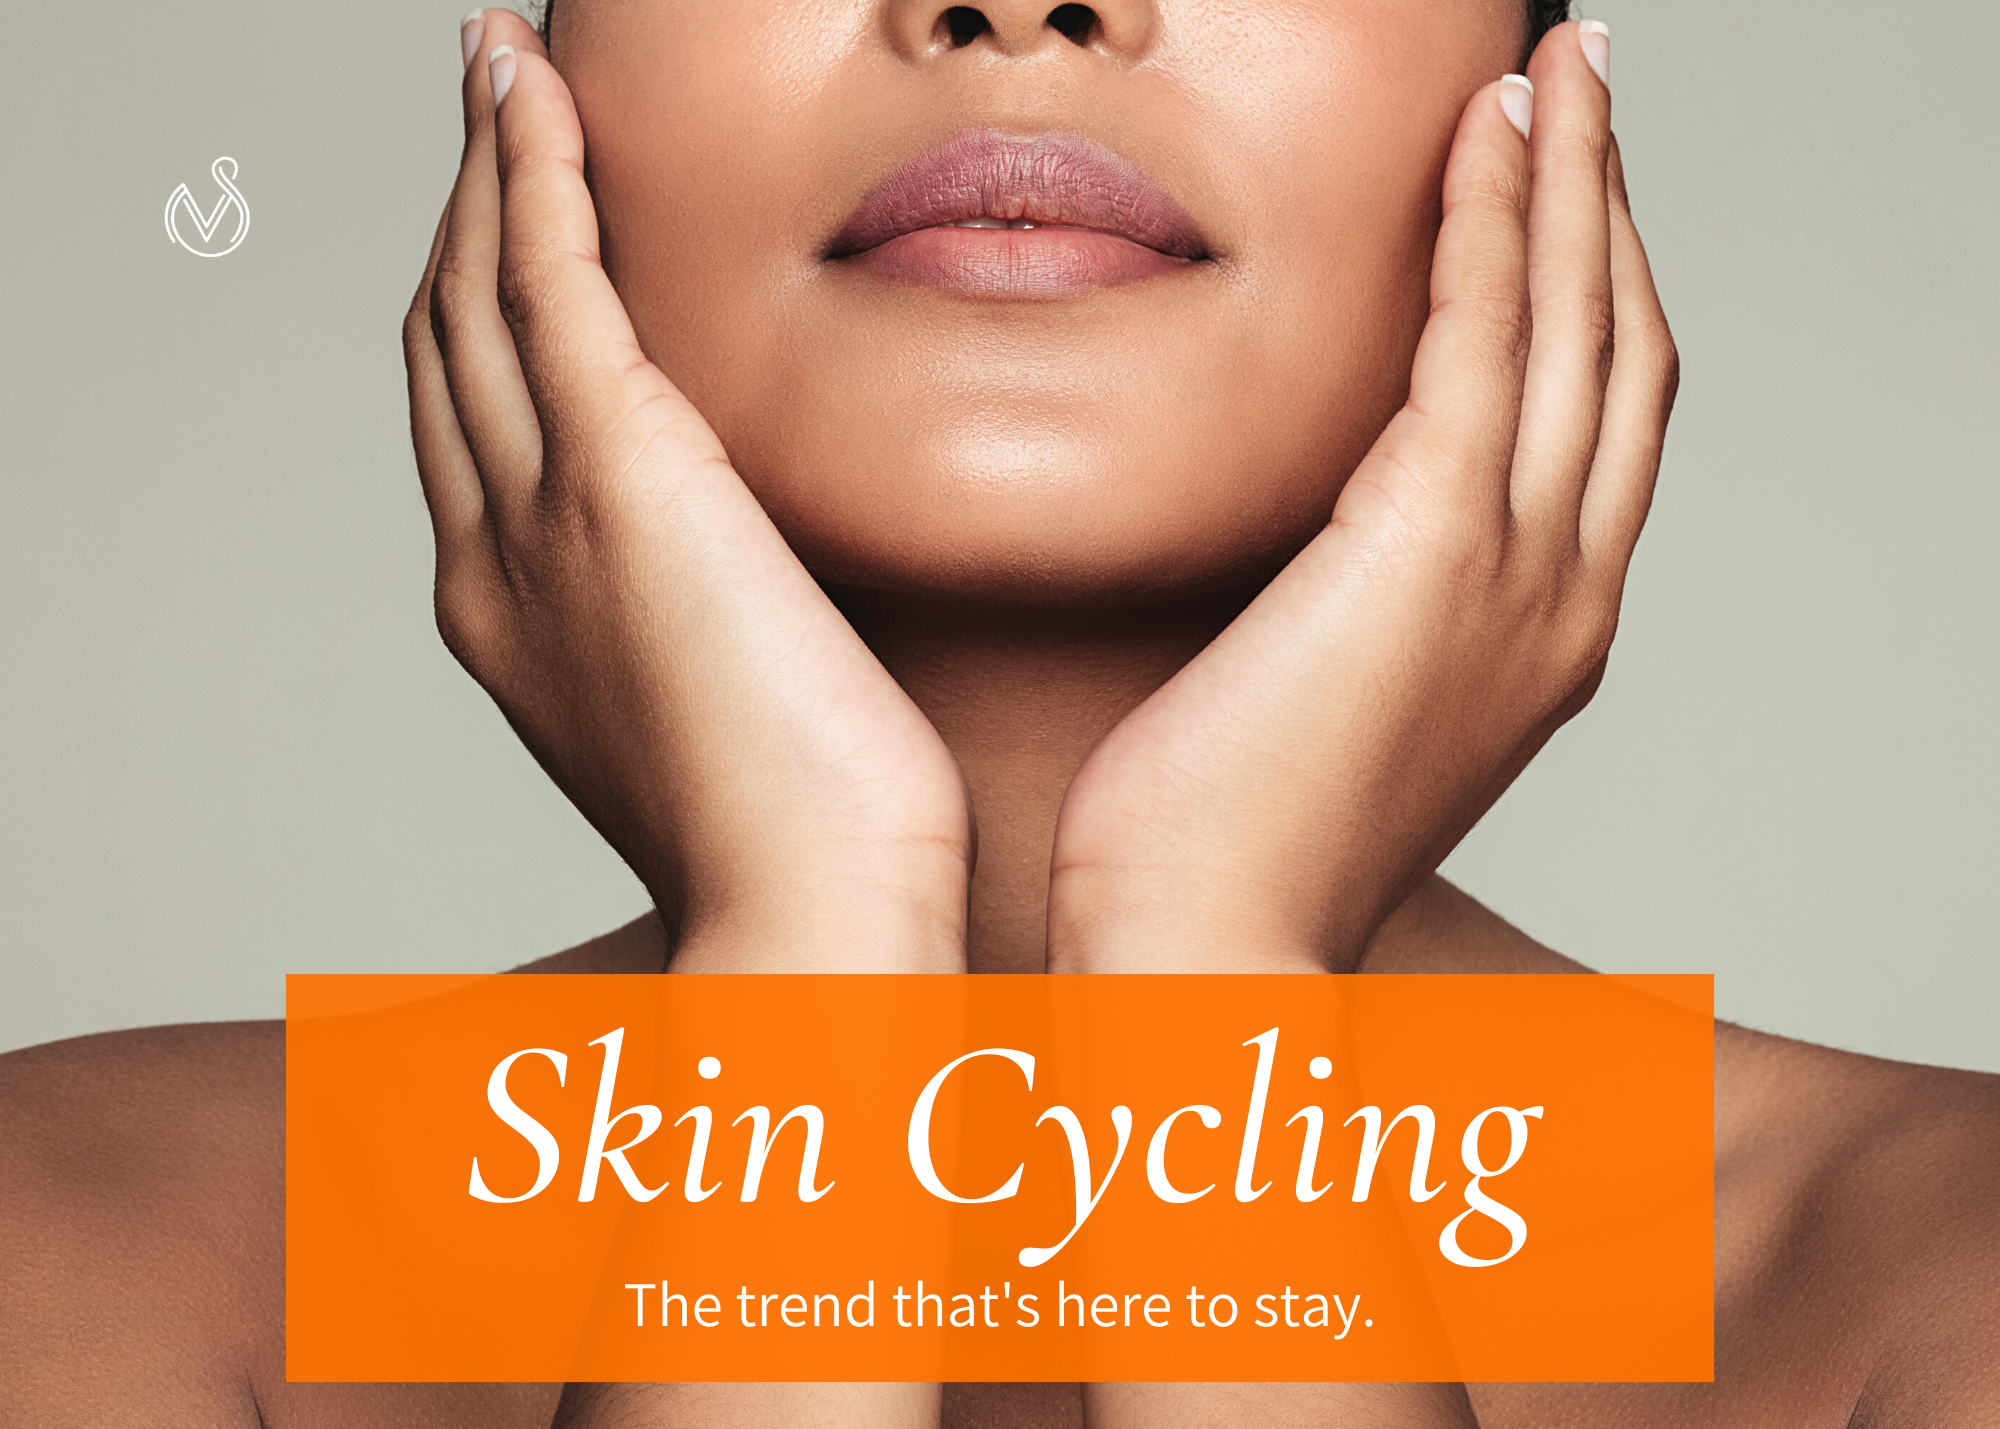 Skin cycling